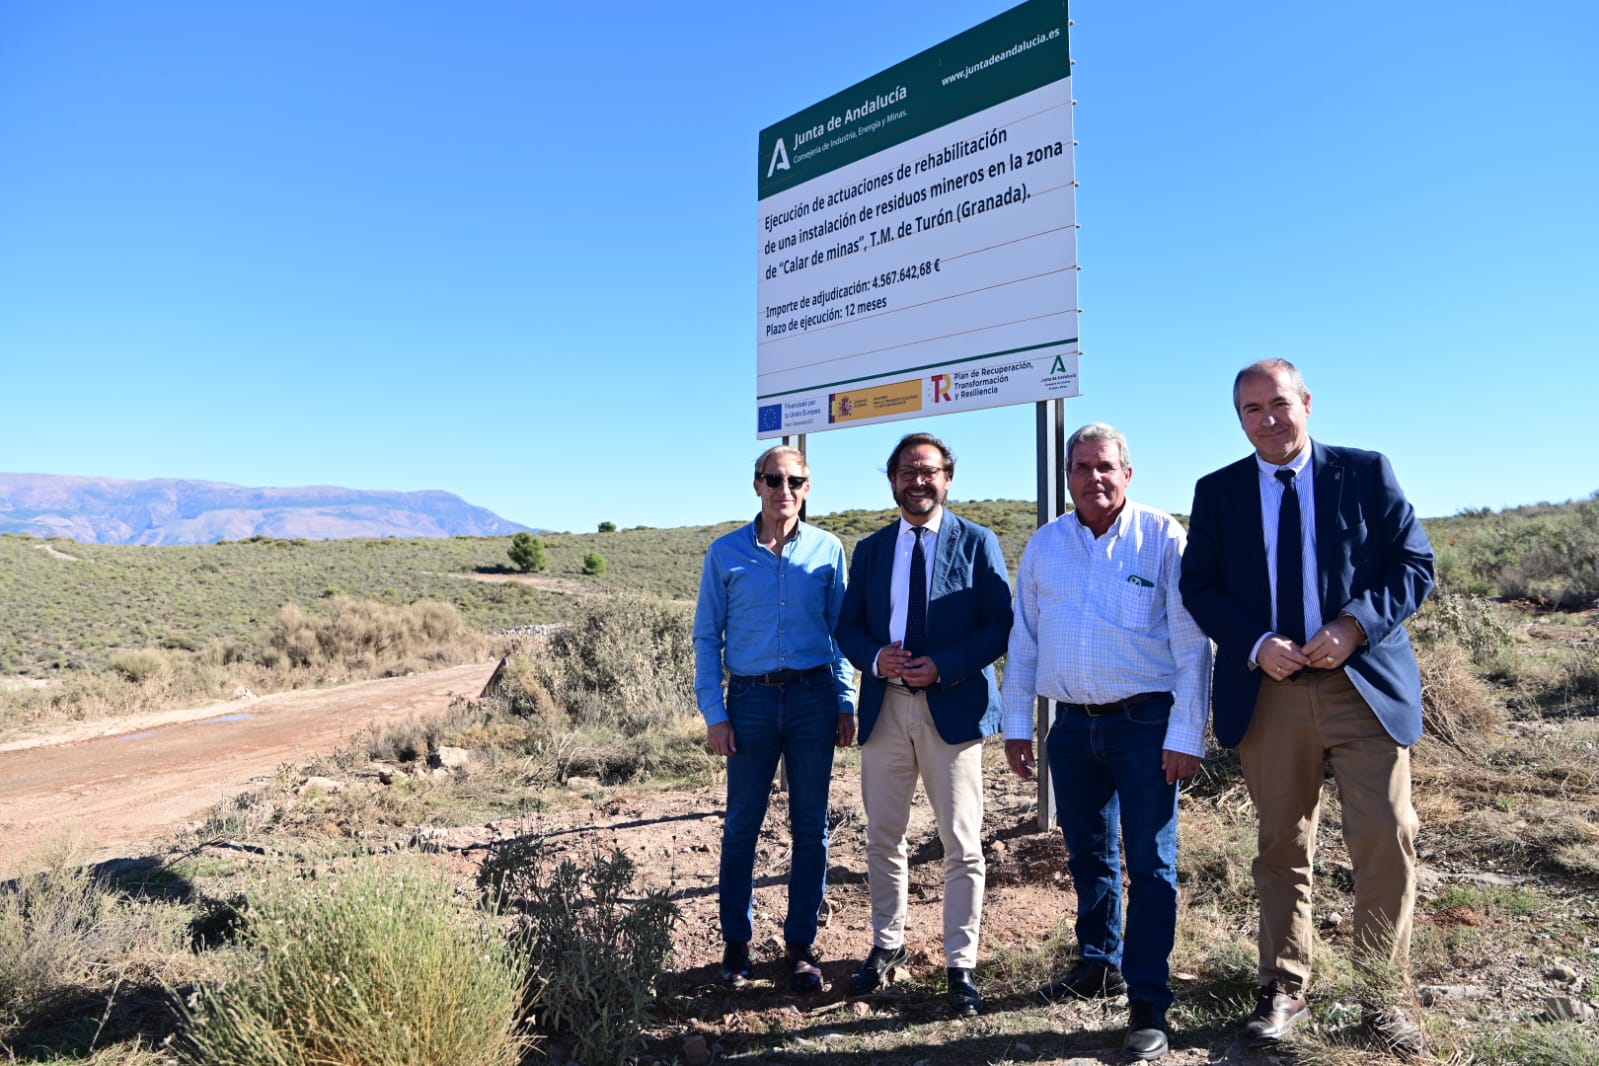 La Junta invierte más de 4,5 millones en rehabilitar el depósito de residuos mineros en Turón